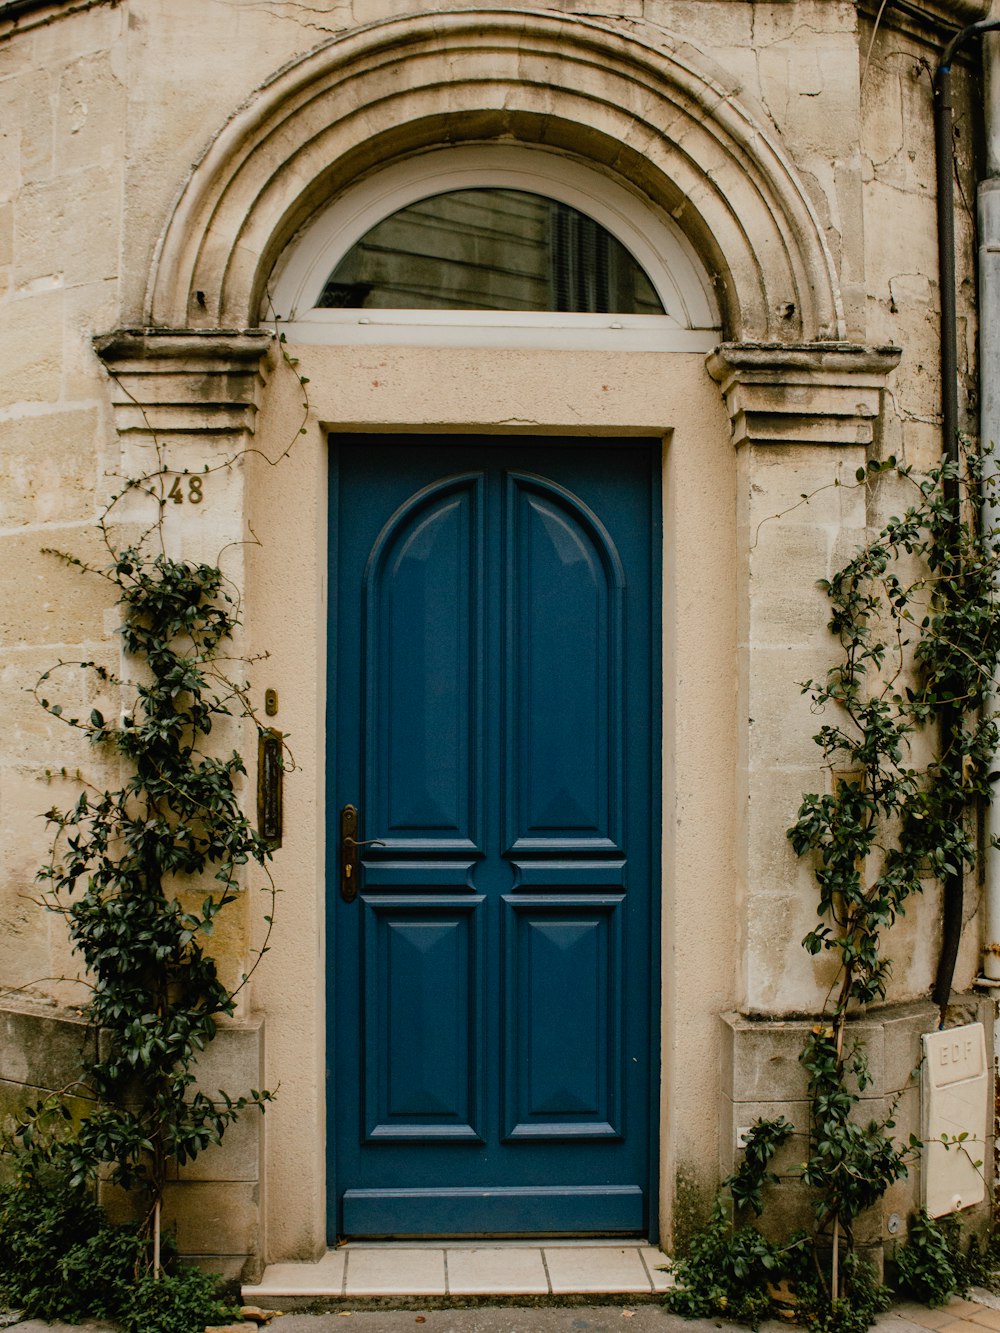 a blue door with vines growing around it